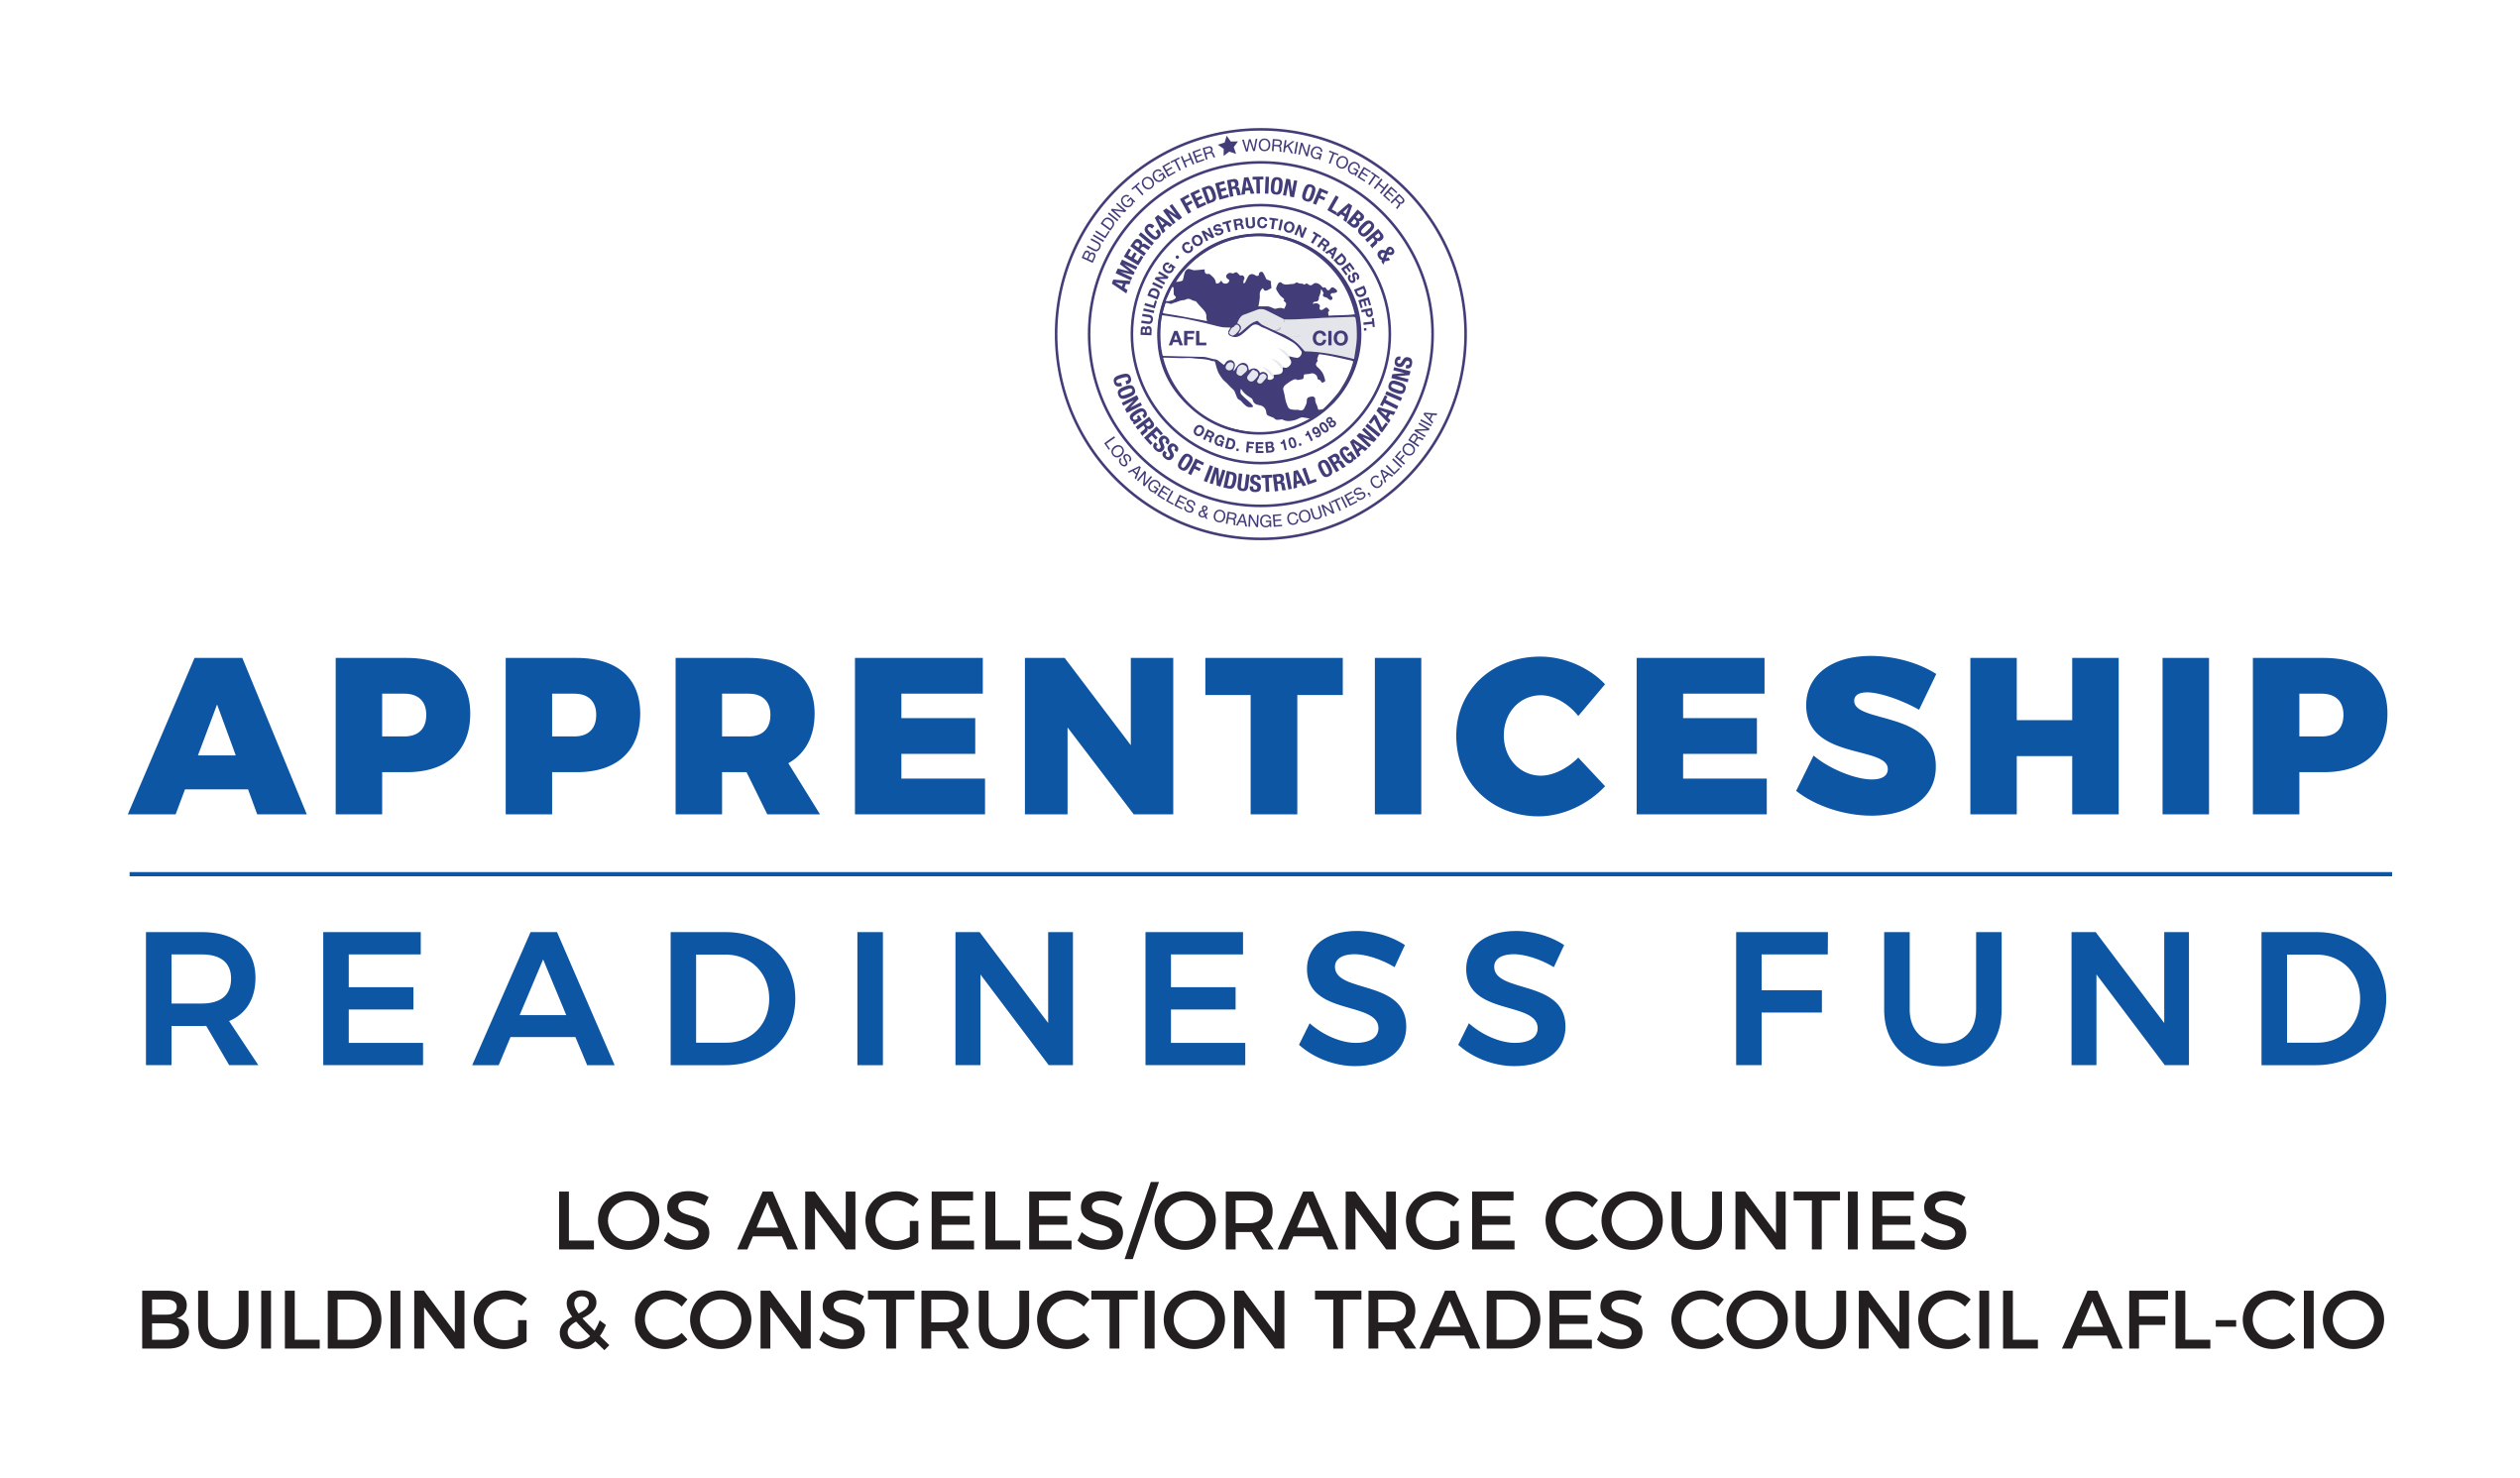 Apprenticeship Readiness Fund. Los Angeles/Orange Counties Building & Construction Trades Council AFL-CIO